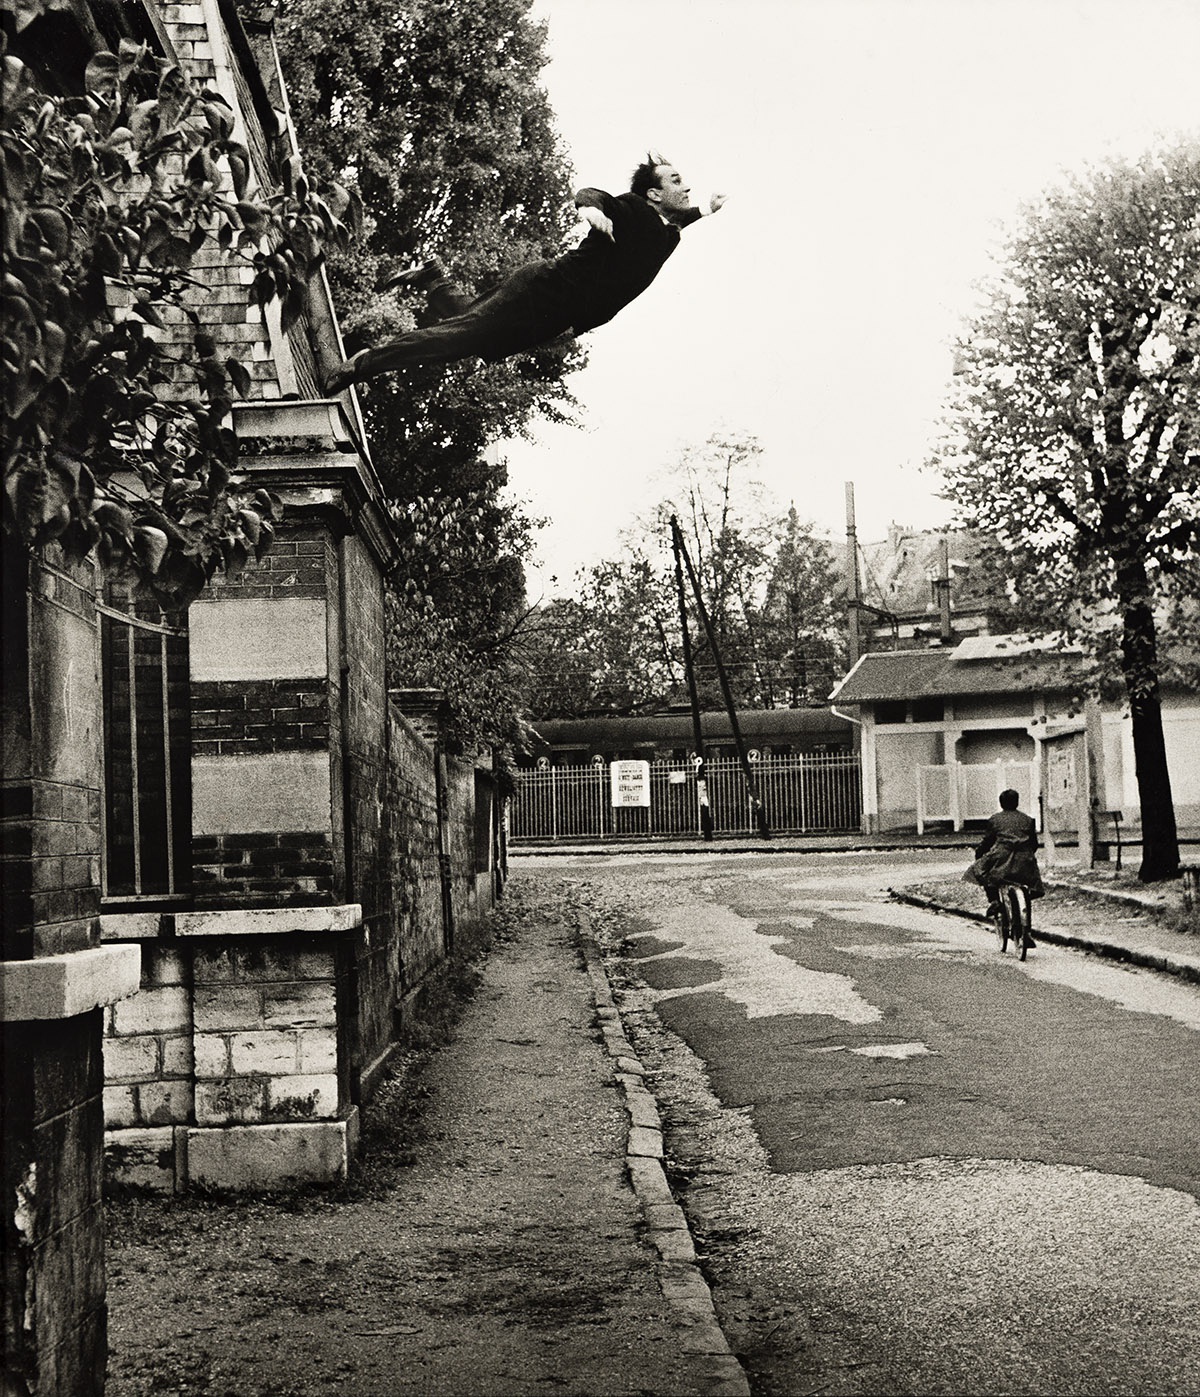 HARRY SHUNK (1924–2006)/JÁNOS KENDER (1937–2009) Le Saut de le Vide [Leap into the Void], Paris, artistic action by Yves Klein (1928-19